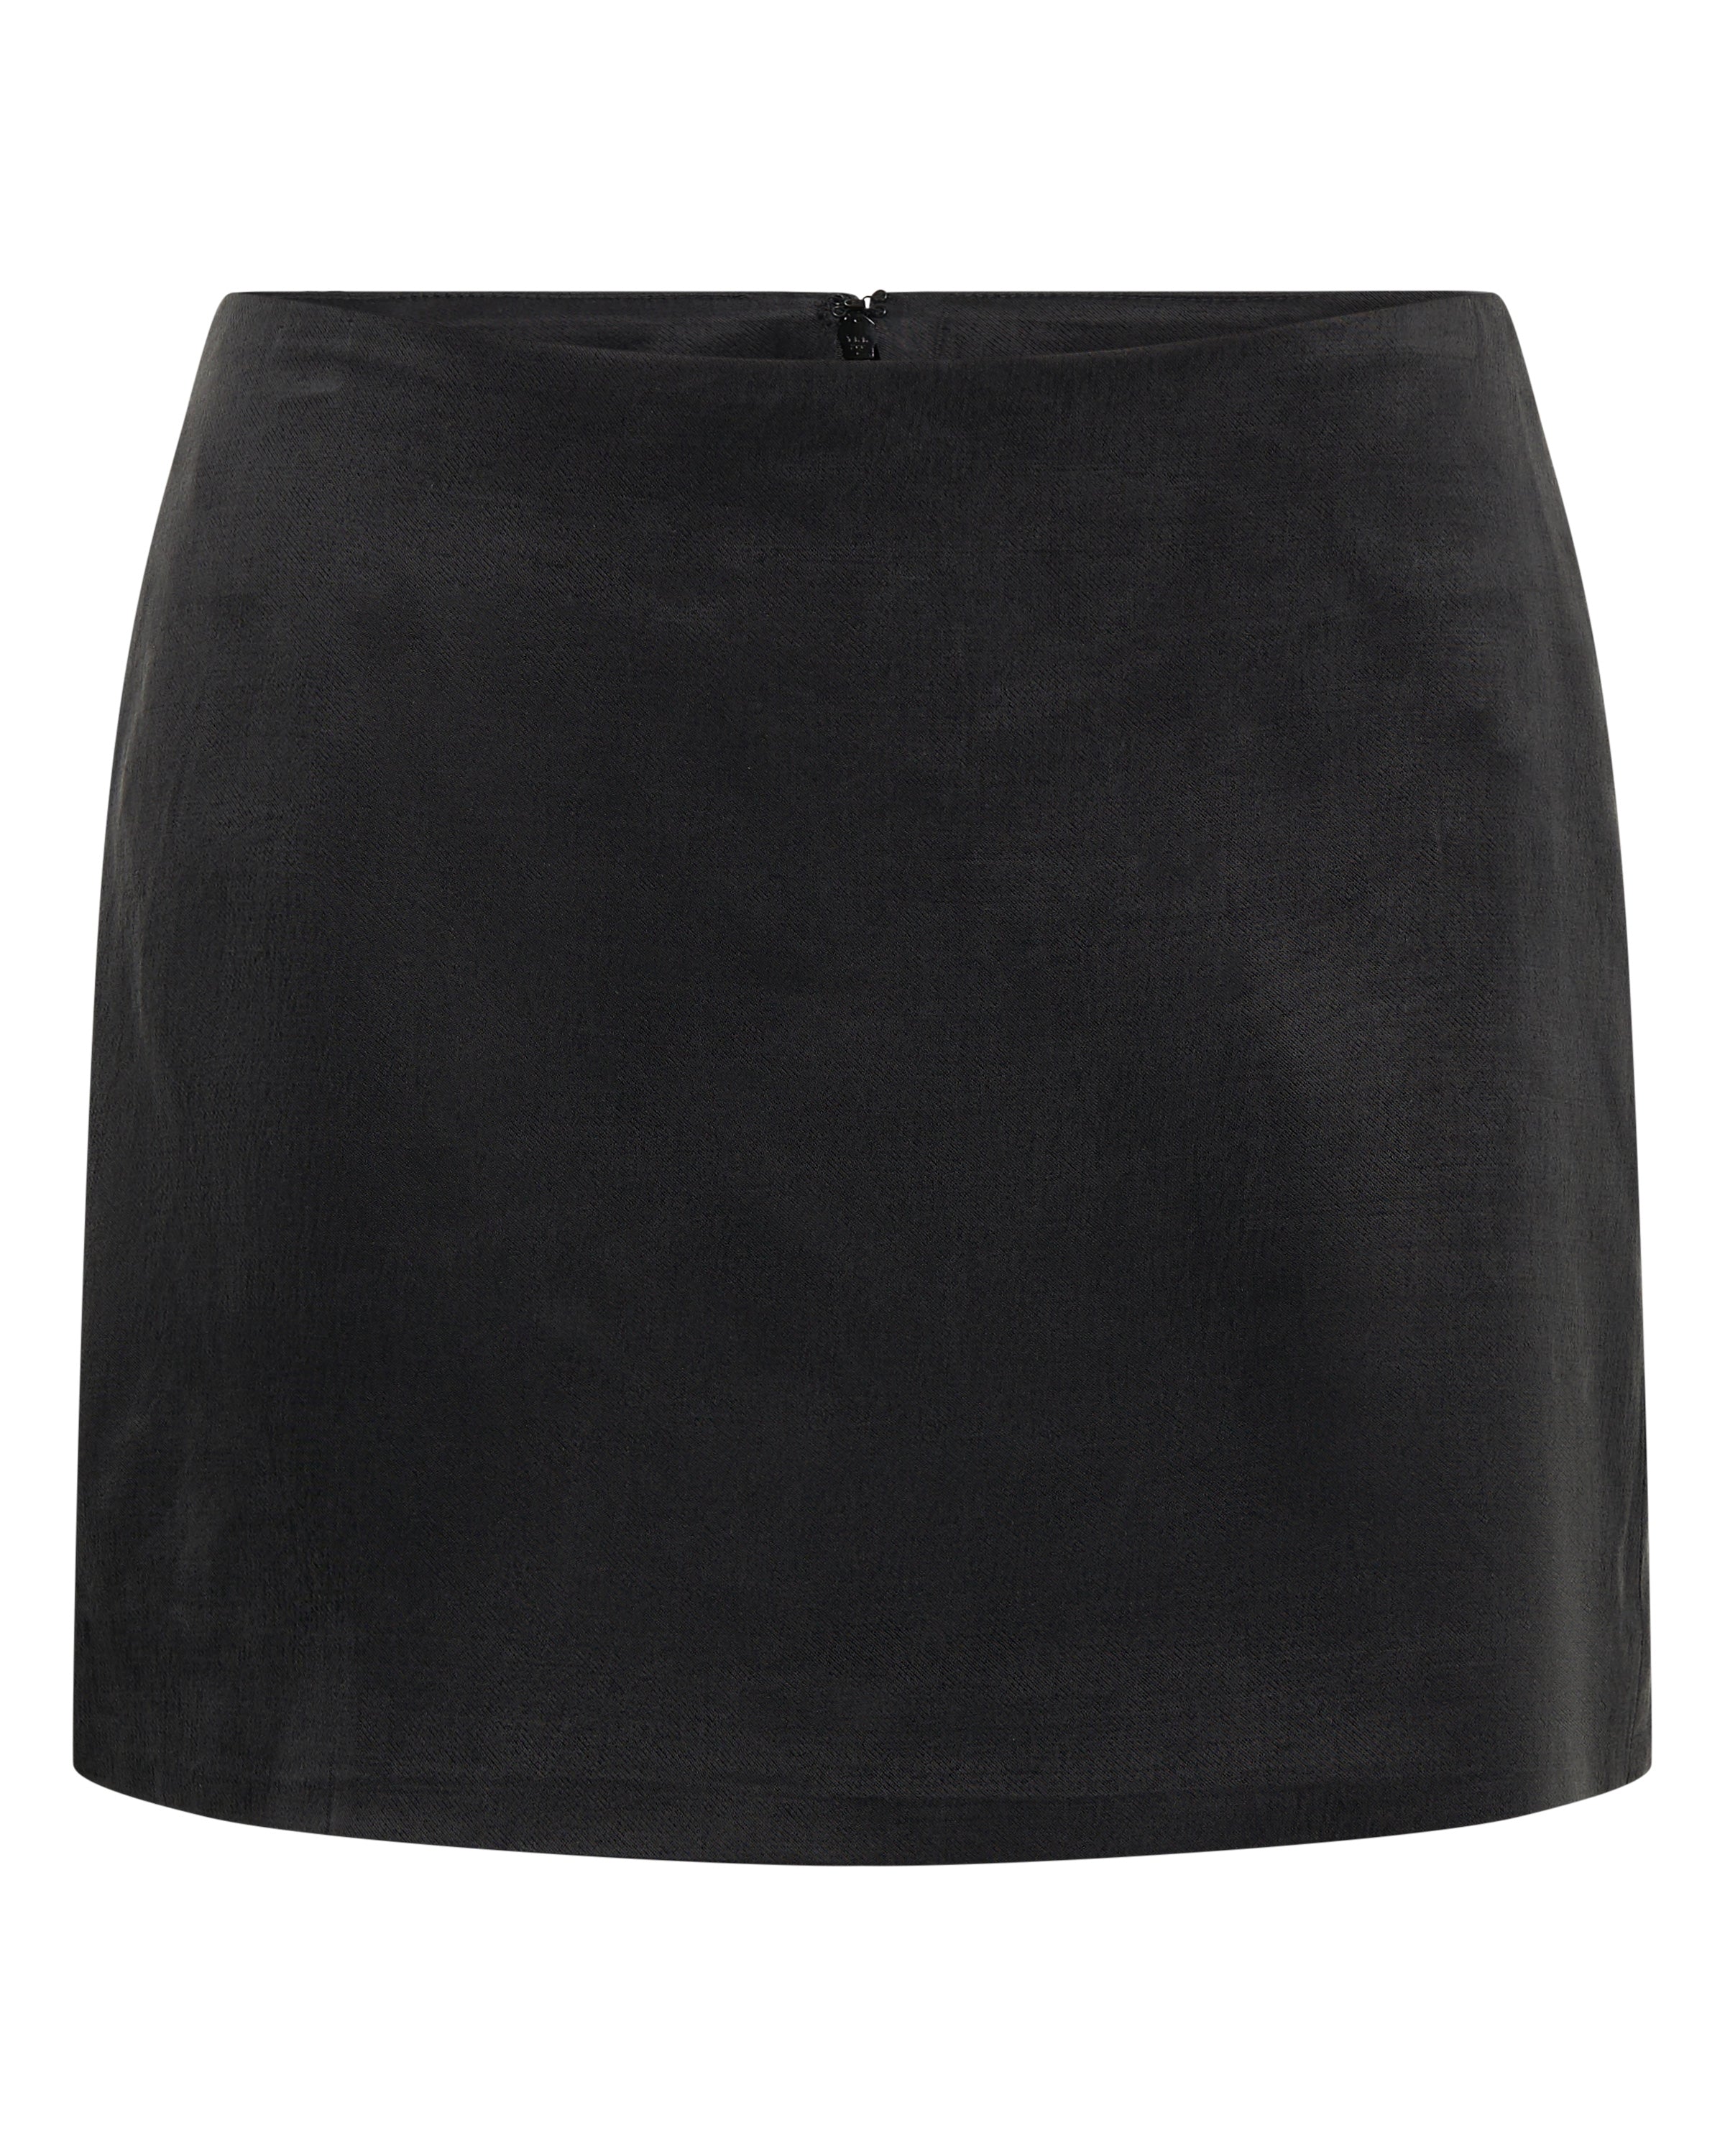 Black Cupro Mini Skirt